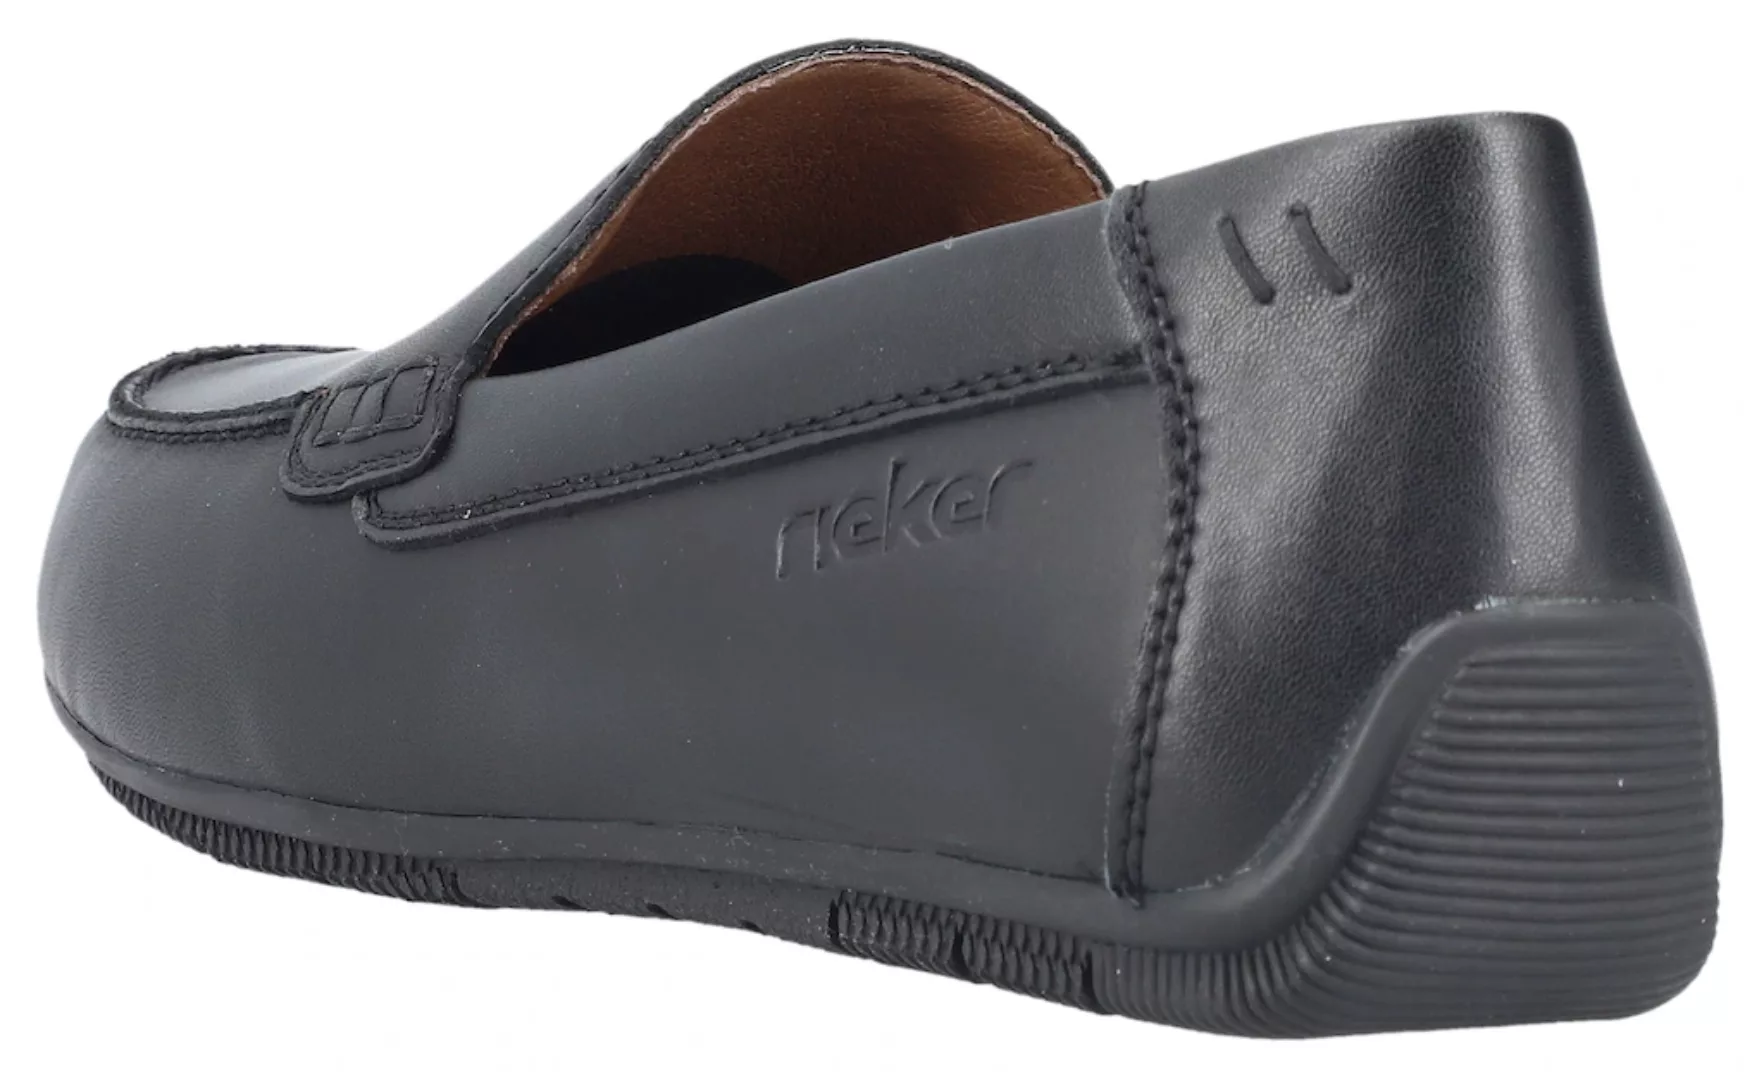 Rieker Mokassin, Slipper, Loafer, Autofahrer Schuh mit typischer Mokassin-N günstig online kaufen